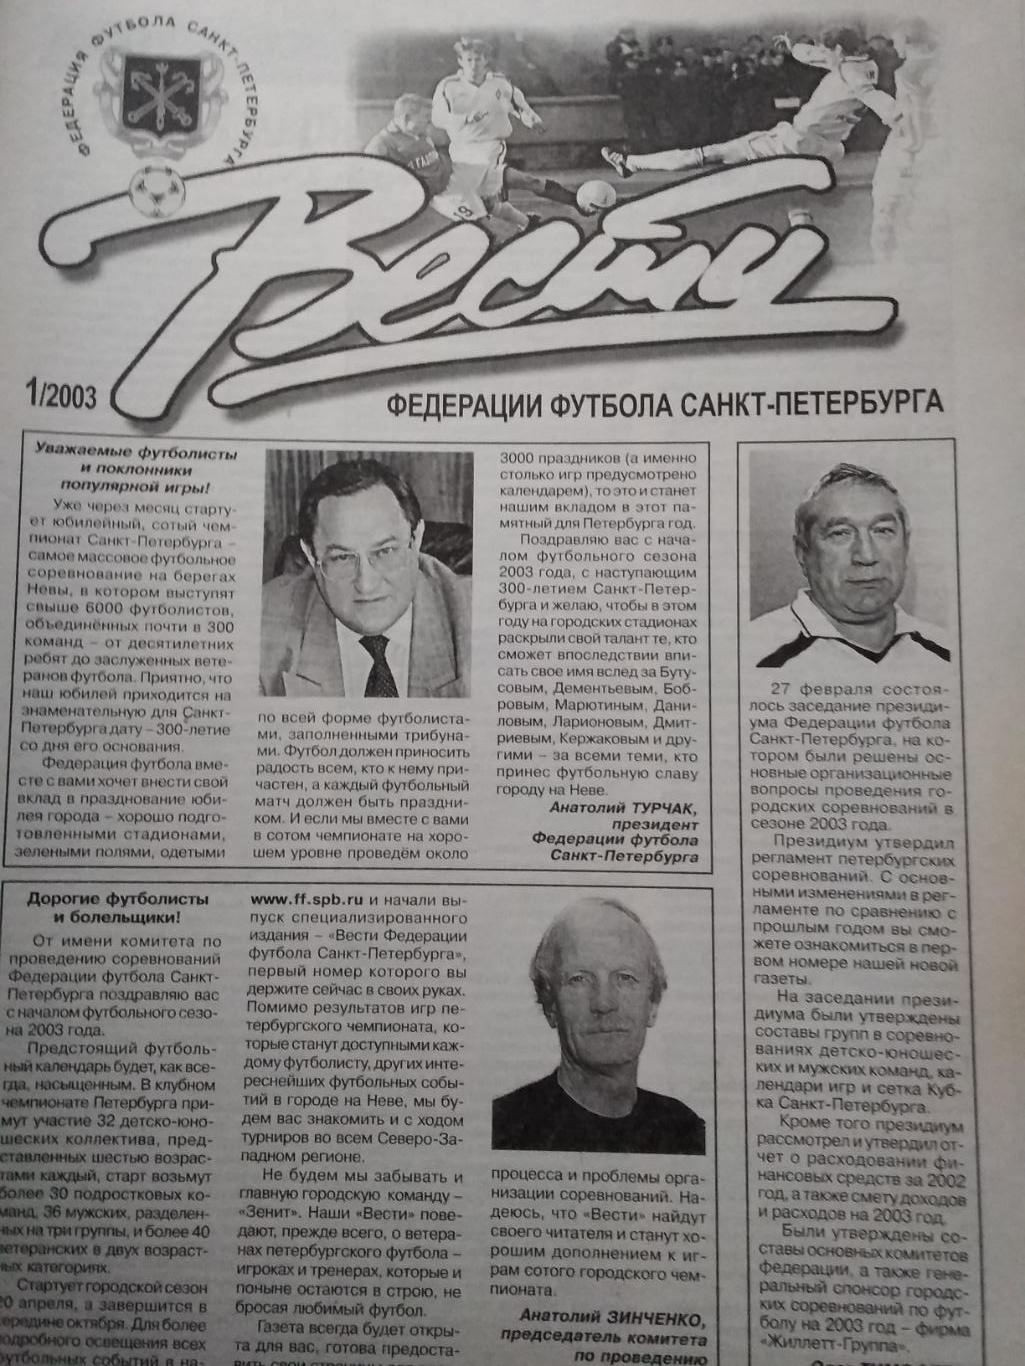 Вести Федерации Футбола Санкт-Петербурга. № 1. 2003.